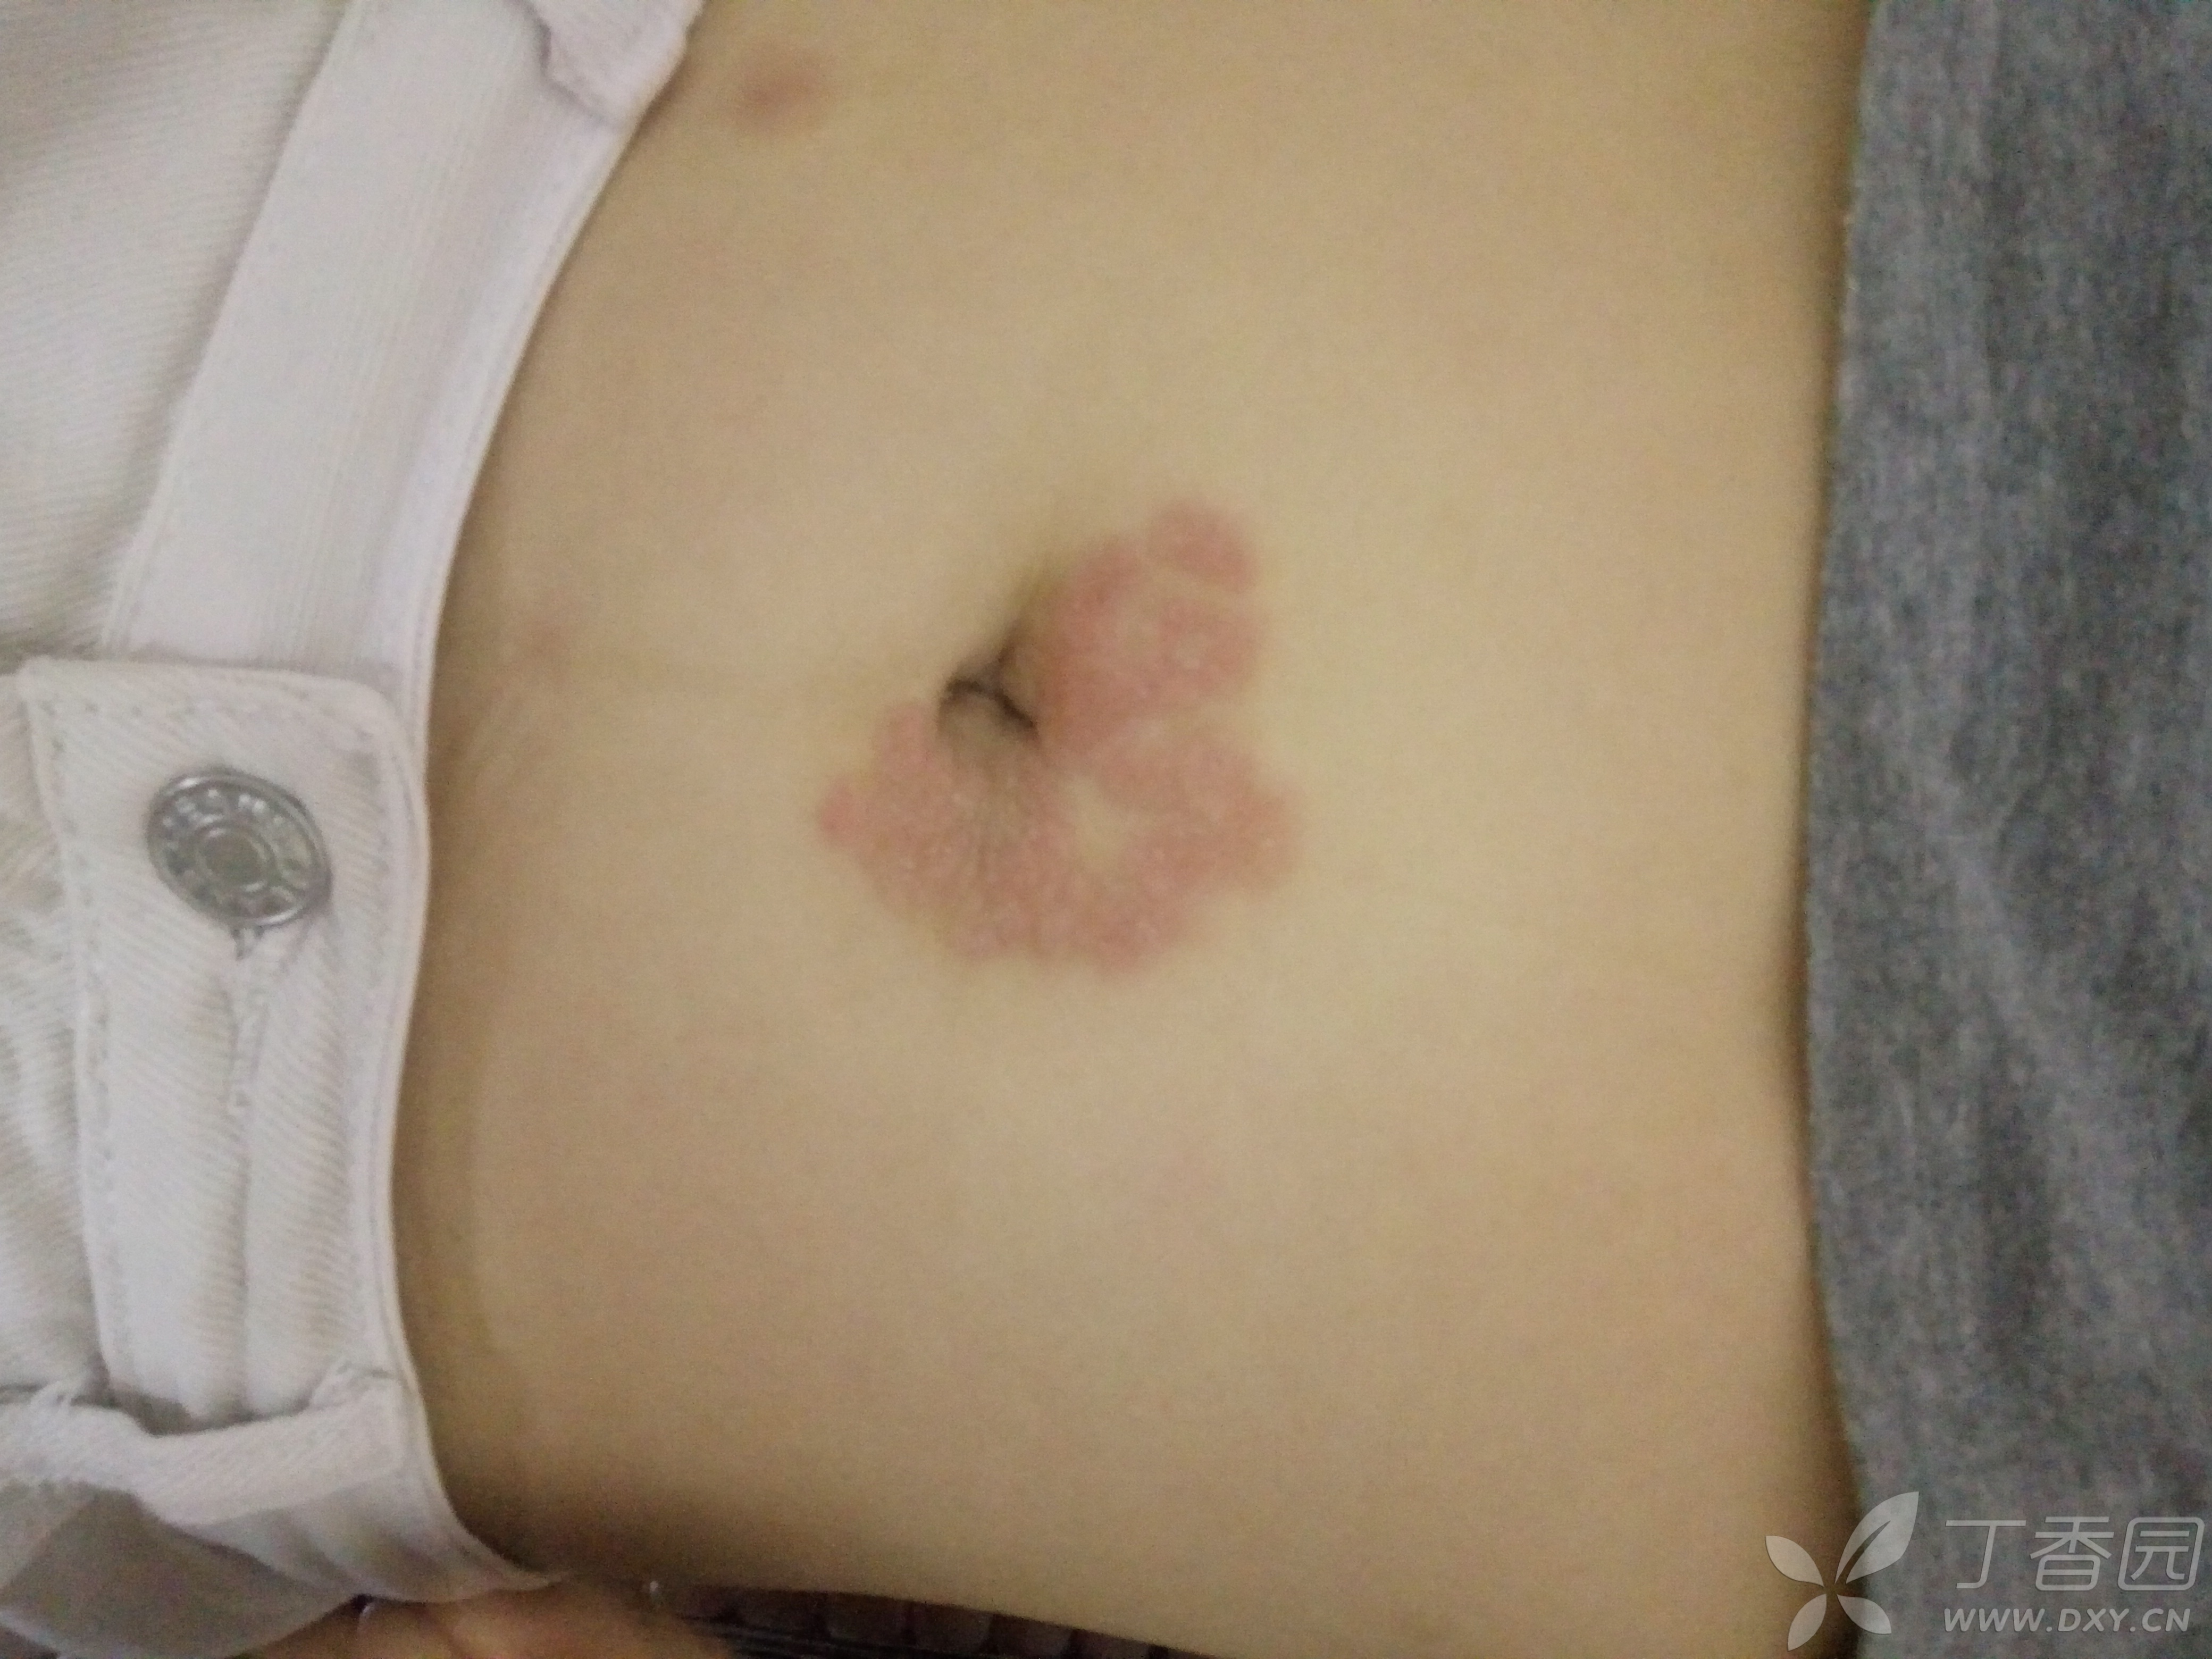 肚脐周围片状红斑,是什么皮肤病?过敏性皮炎?